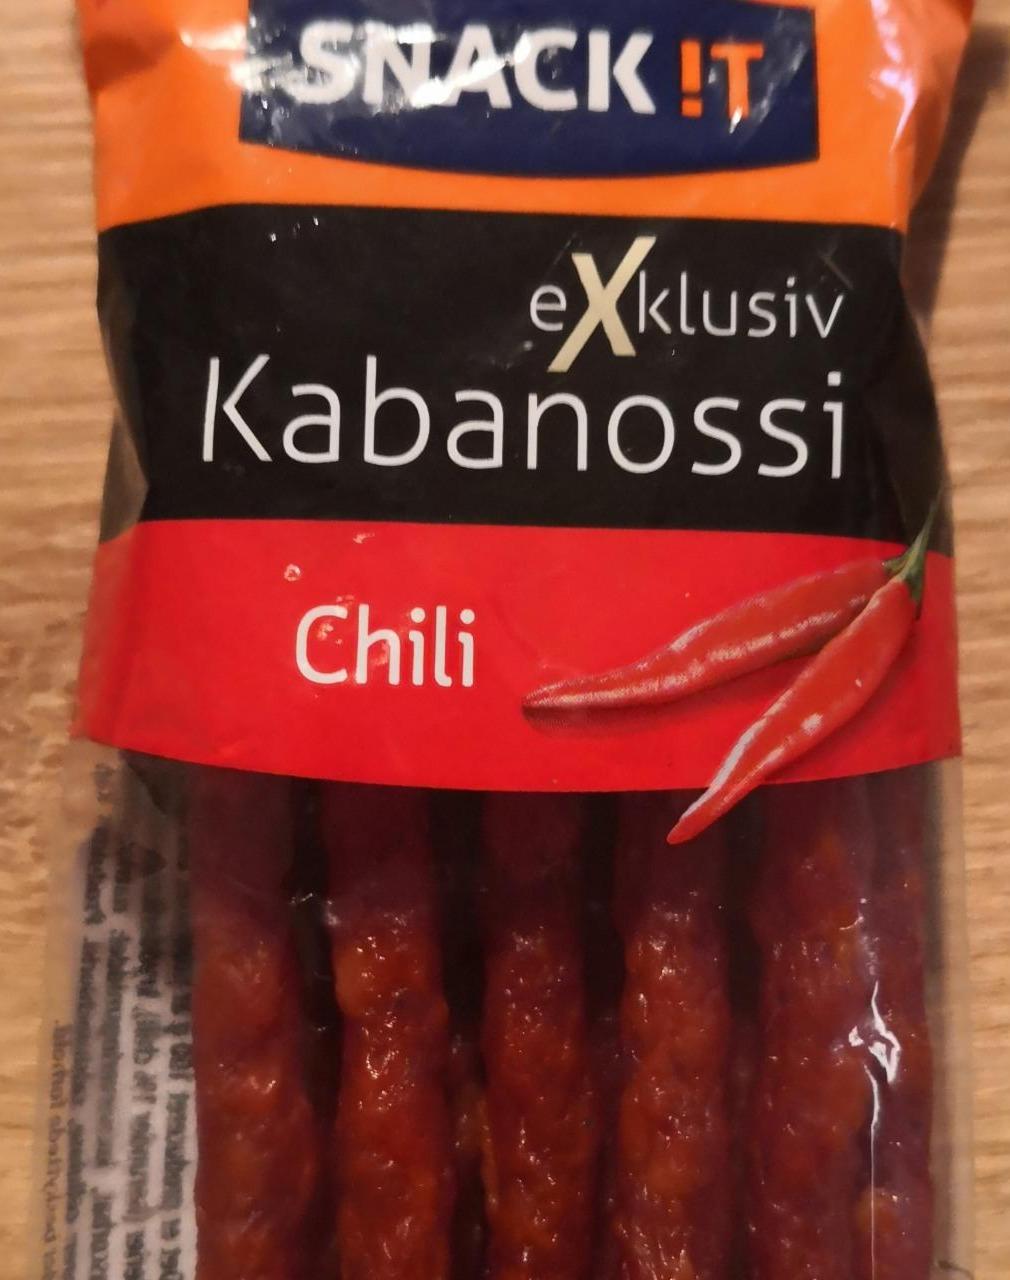 Fotografie - Kabanossi Exclusiv Chili Snack!t